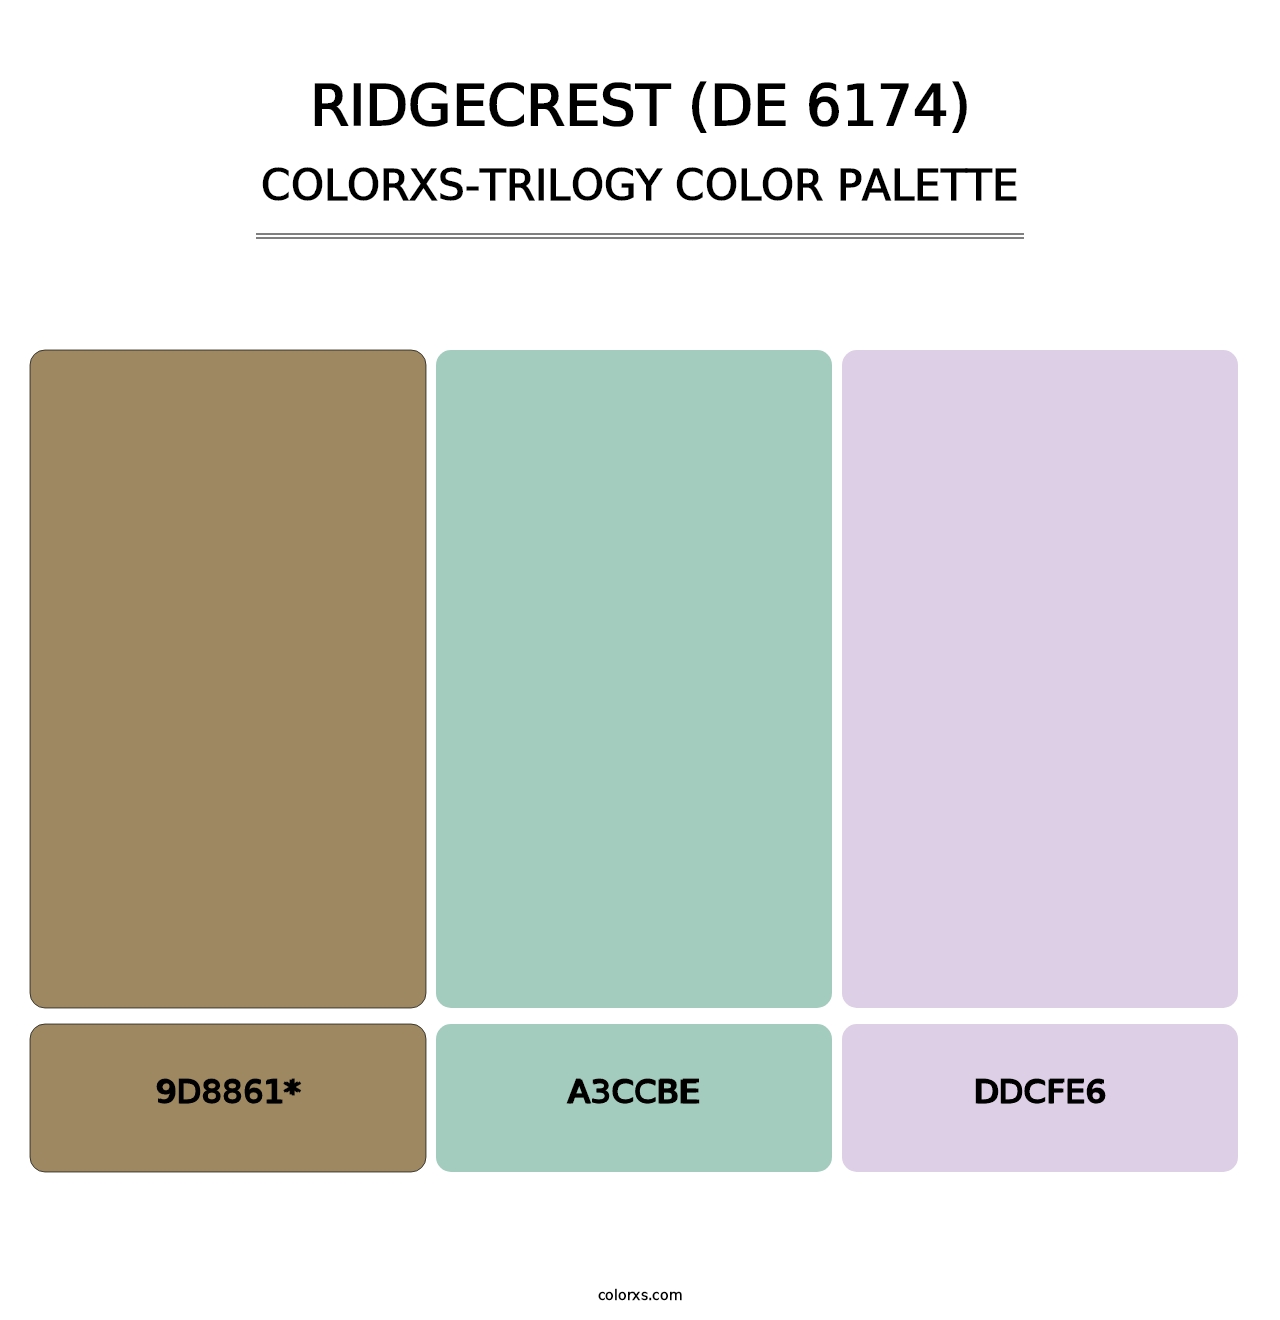 Ridgecrest (DE 6174) - Colorxs Trilogy Palette